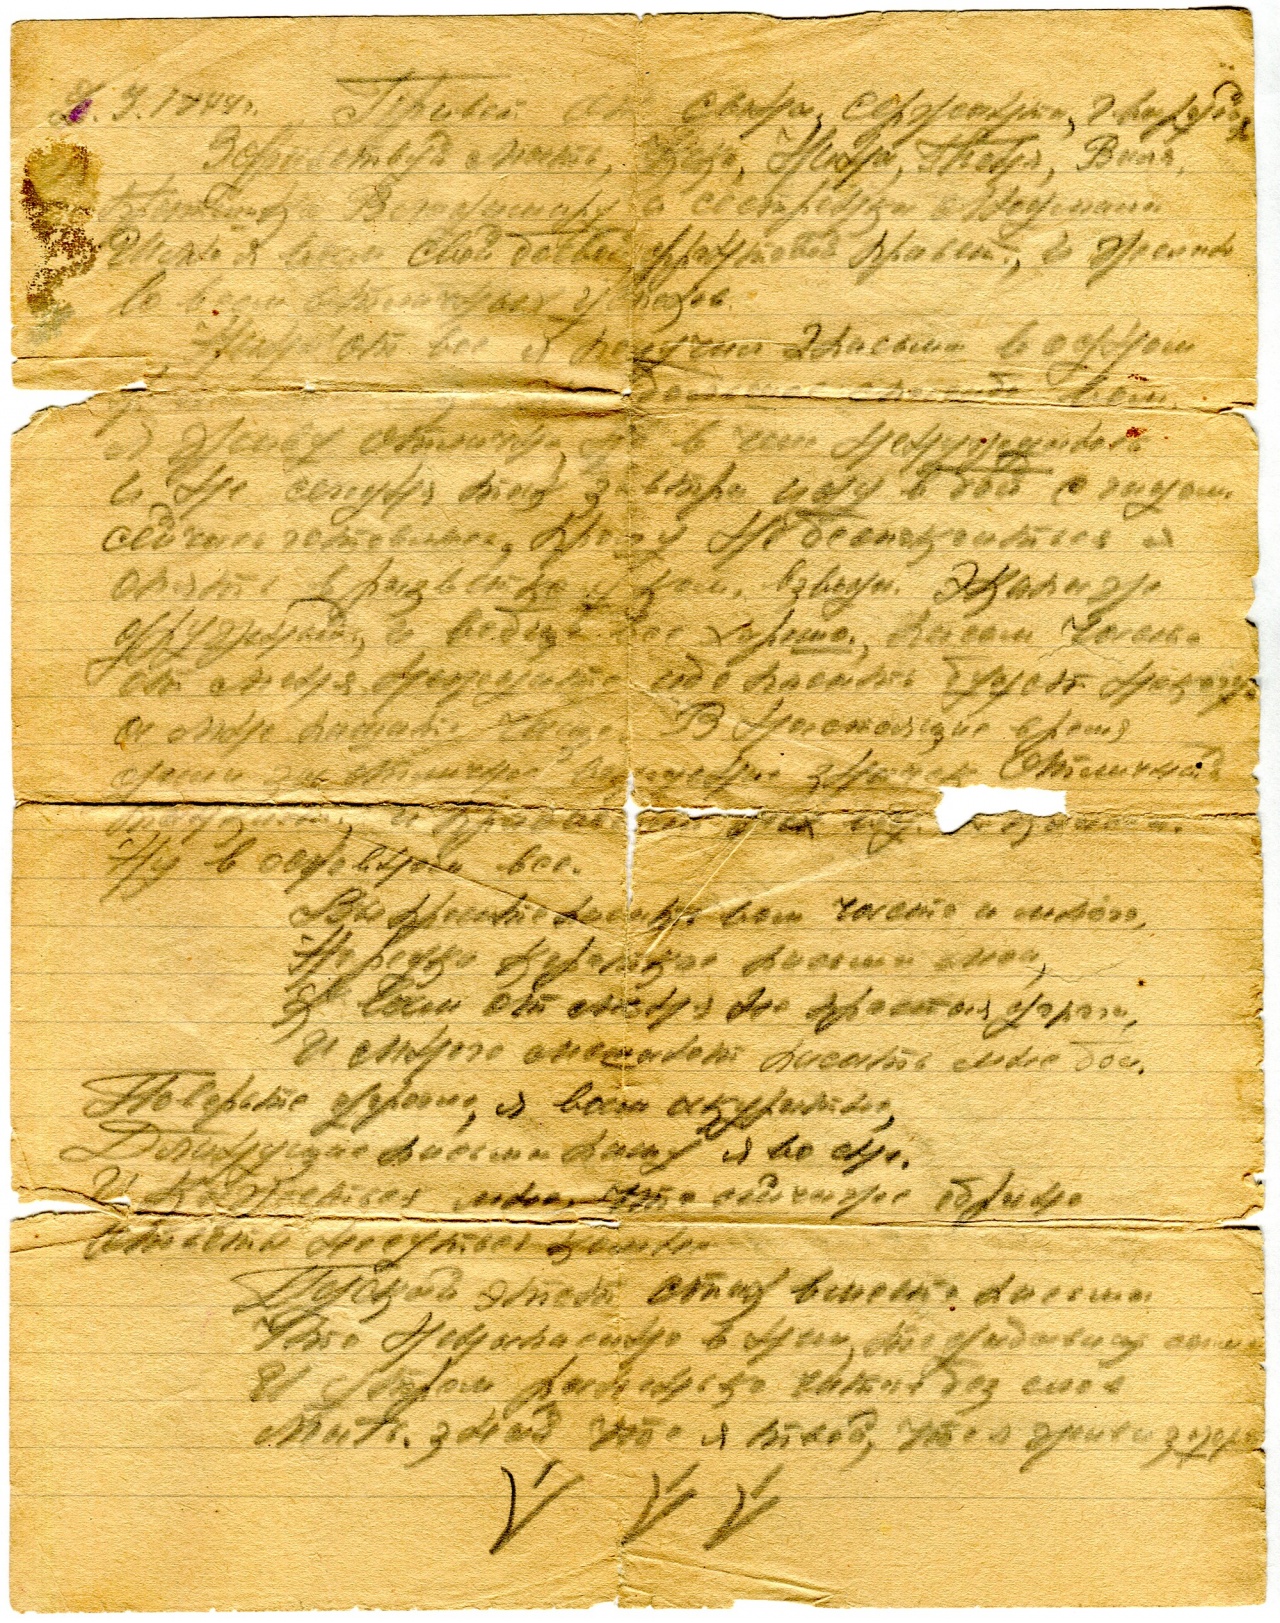 И, наконец, последнее письмо датировано 2 сентября 1944 г. Написано на двух сторонах разлинованного тетрадного листа.